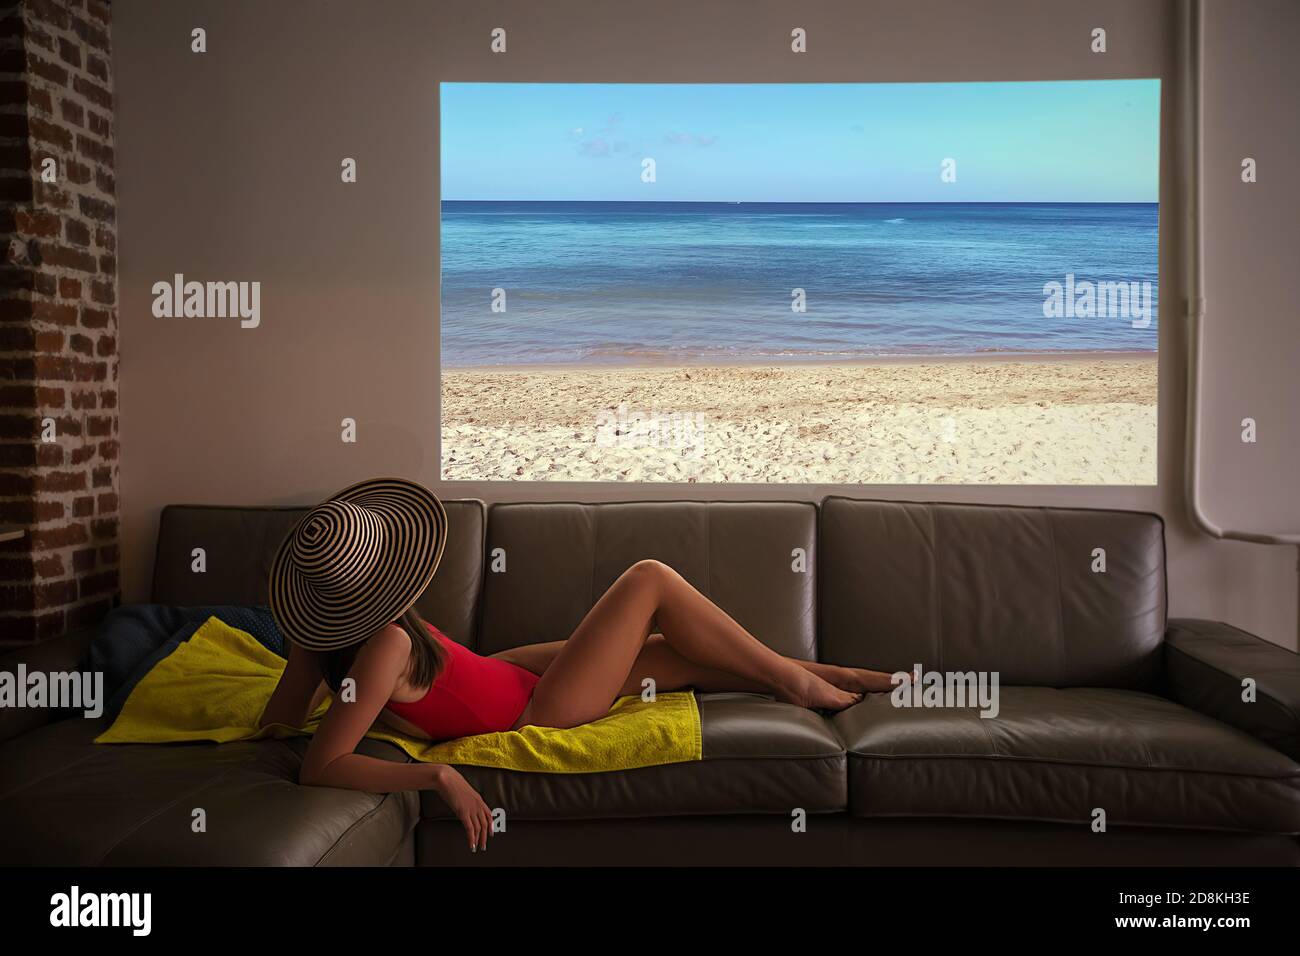 La mujer pretende tomar el sol en una playa falsa durante un pandemia en casa Foto de stock